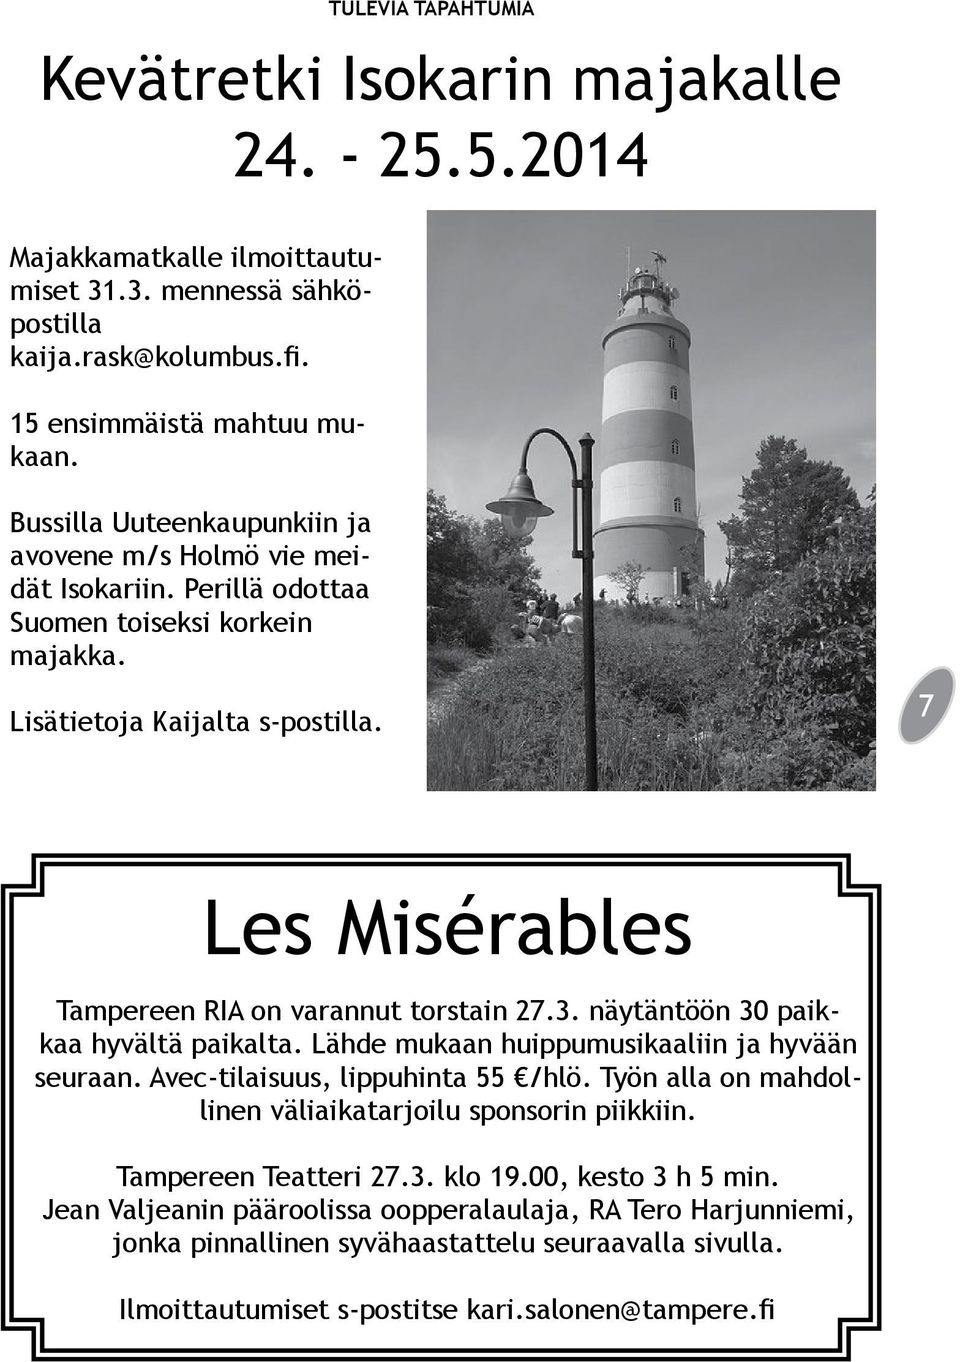 7 Les Misérables Tampereen RIA on varannut torstain 27.3. näytäntöön 30 paikkaa hyvältä paikalta. Lähde mukaan huippumusikaaliin ja hyvään seuraan. Avec-tilaisuus, lippuhinta 55 /hlö.